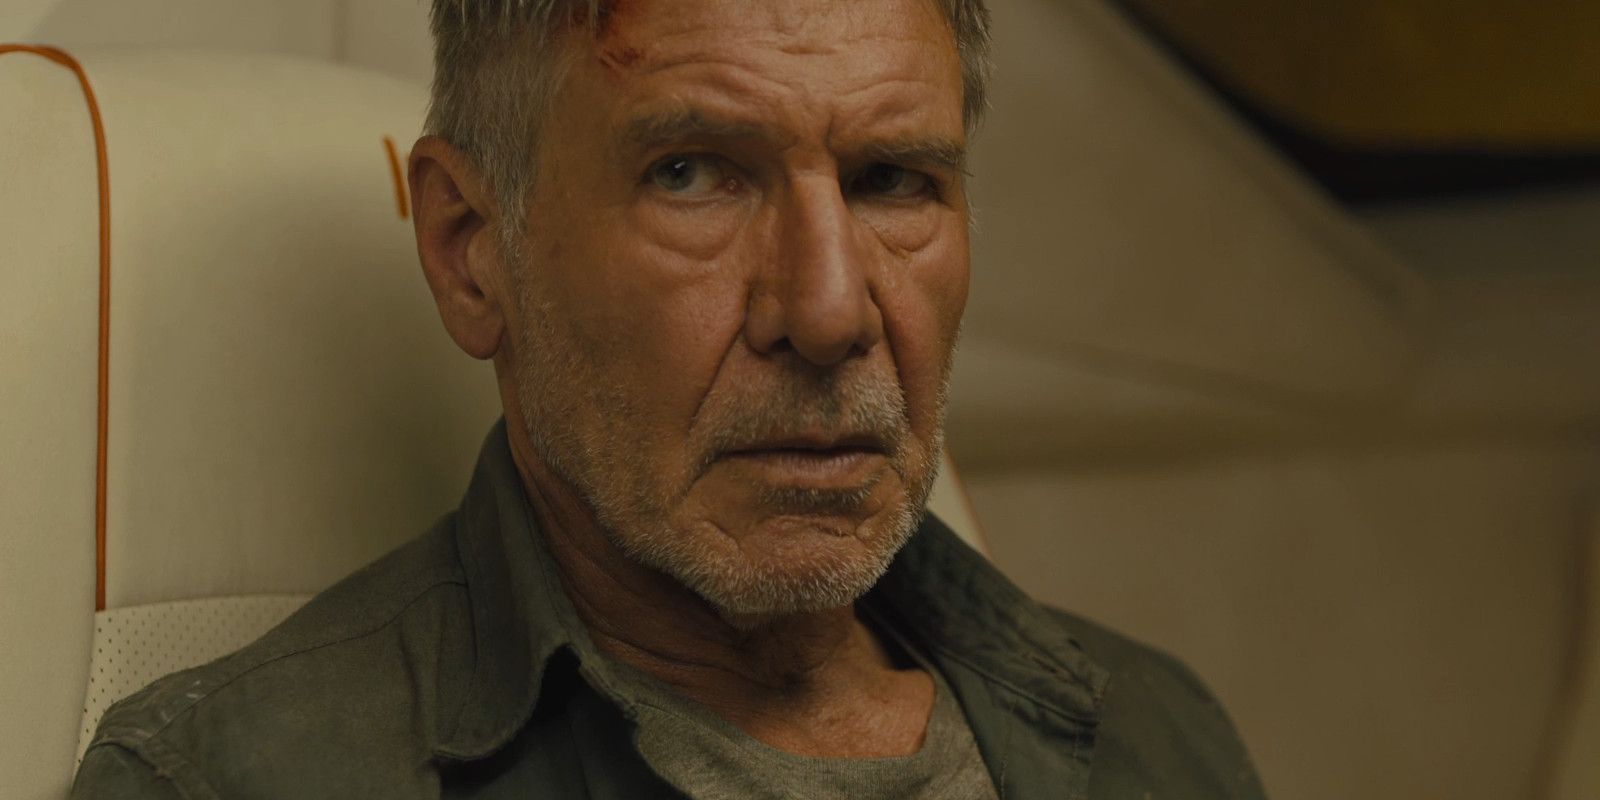 Deckard sitting in an aircraft in Blade Runner 2049